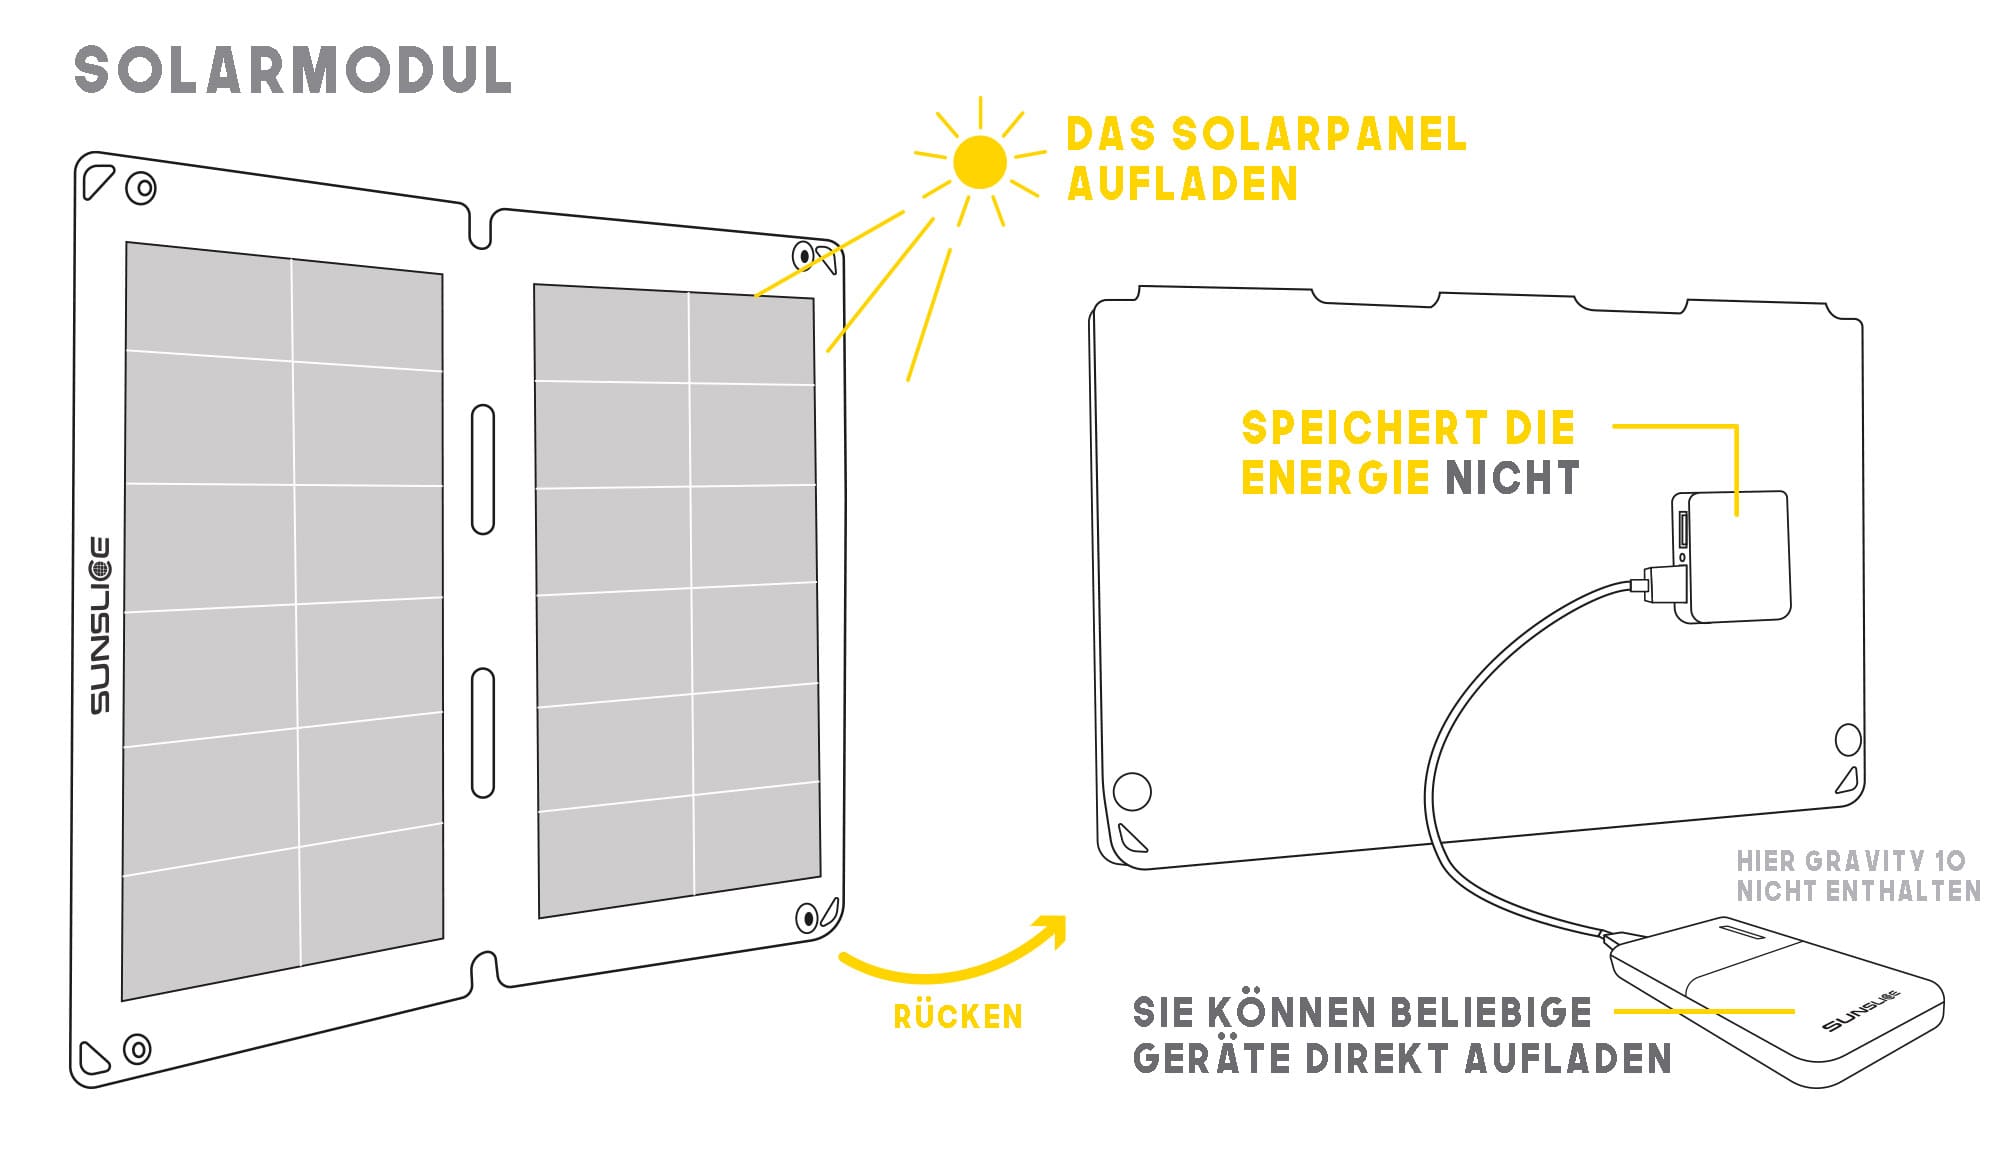 flexible Solarmodul, das dank der Sonne direkt eine Powerbank auflädt, das Fusionspanel speichert die Energie nicht 